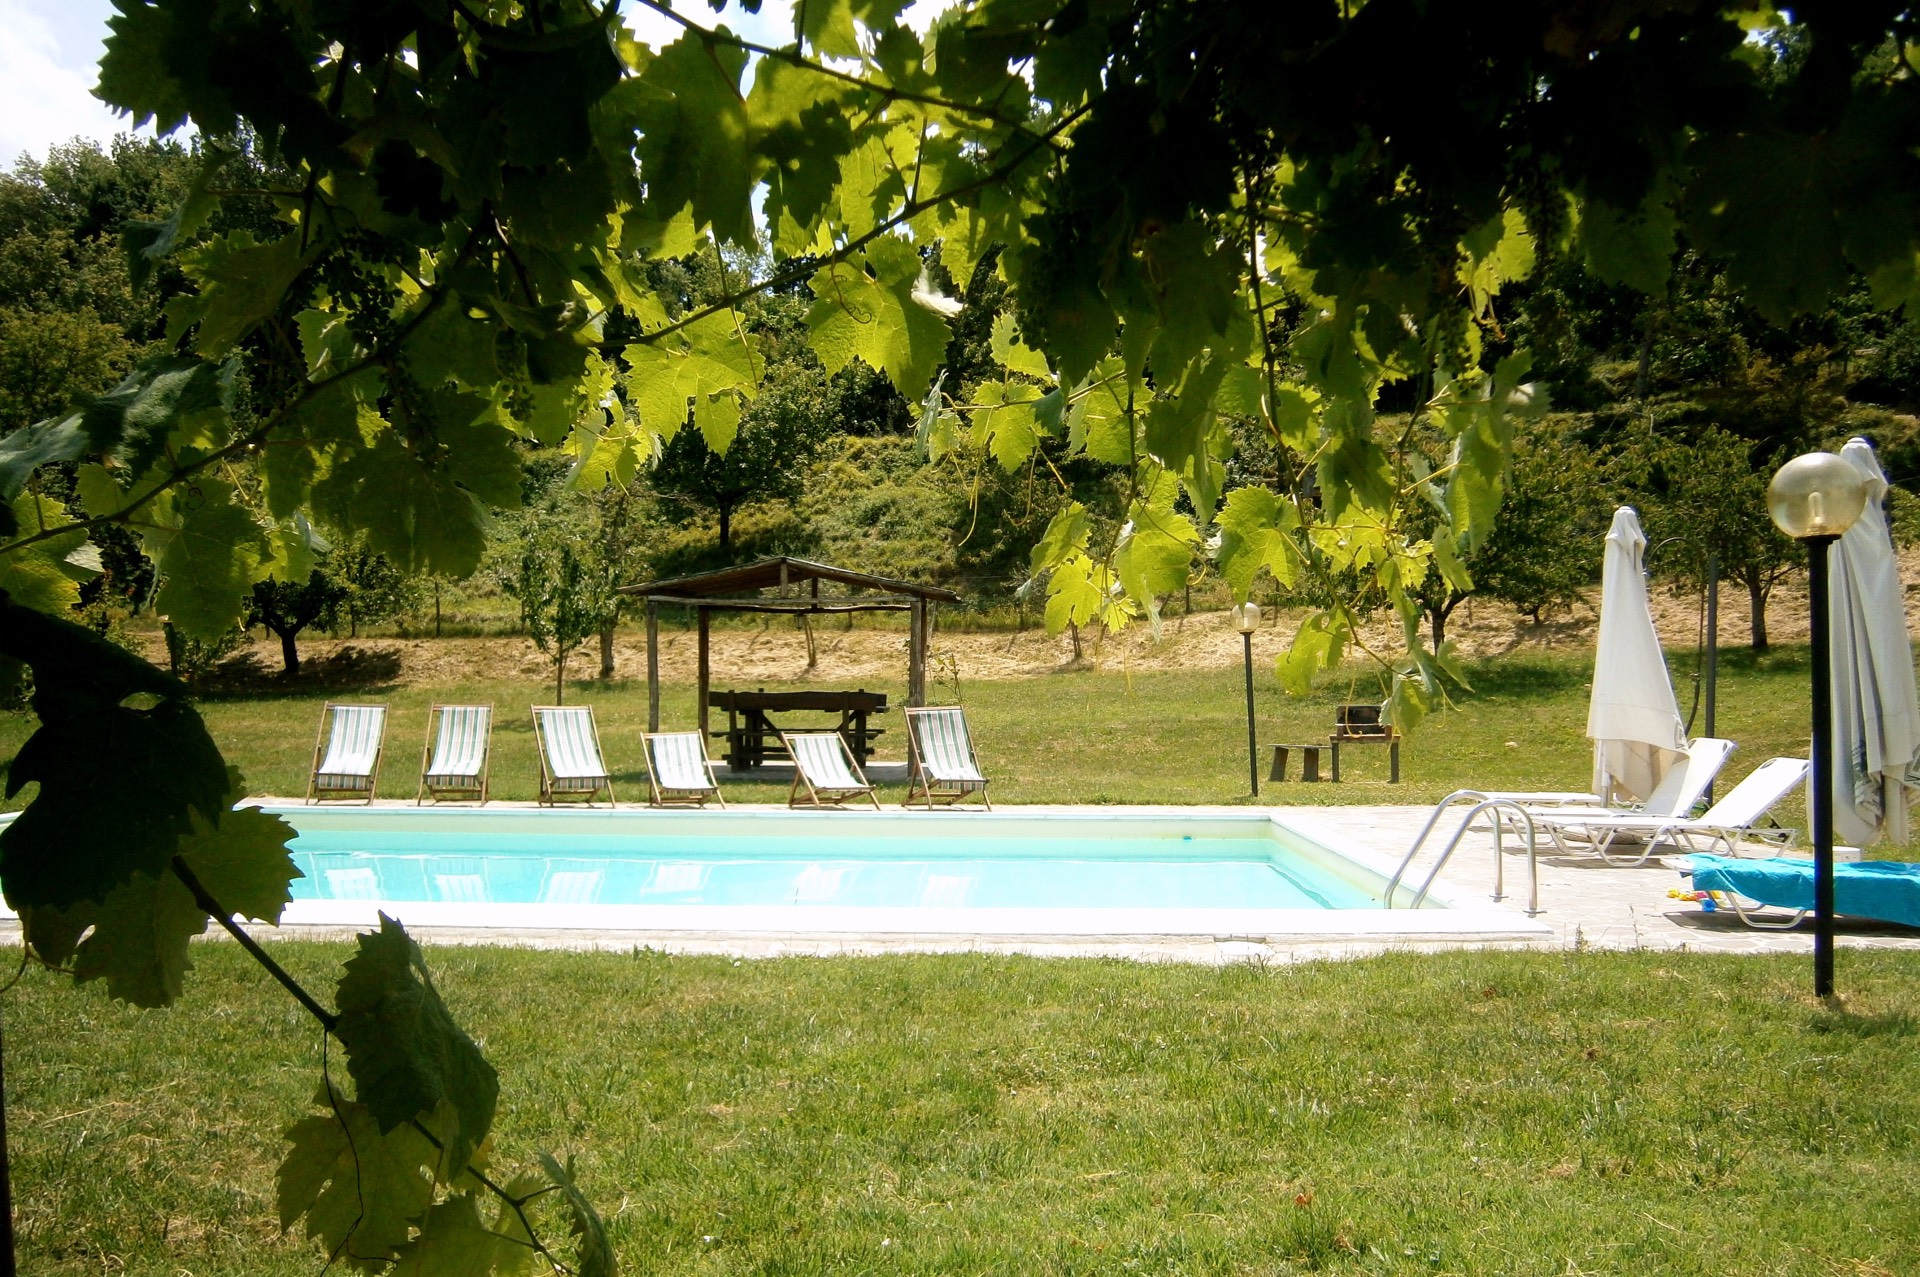 La piscina esterna, nel giardino dell'agriturismo Il Muretto, Mugello